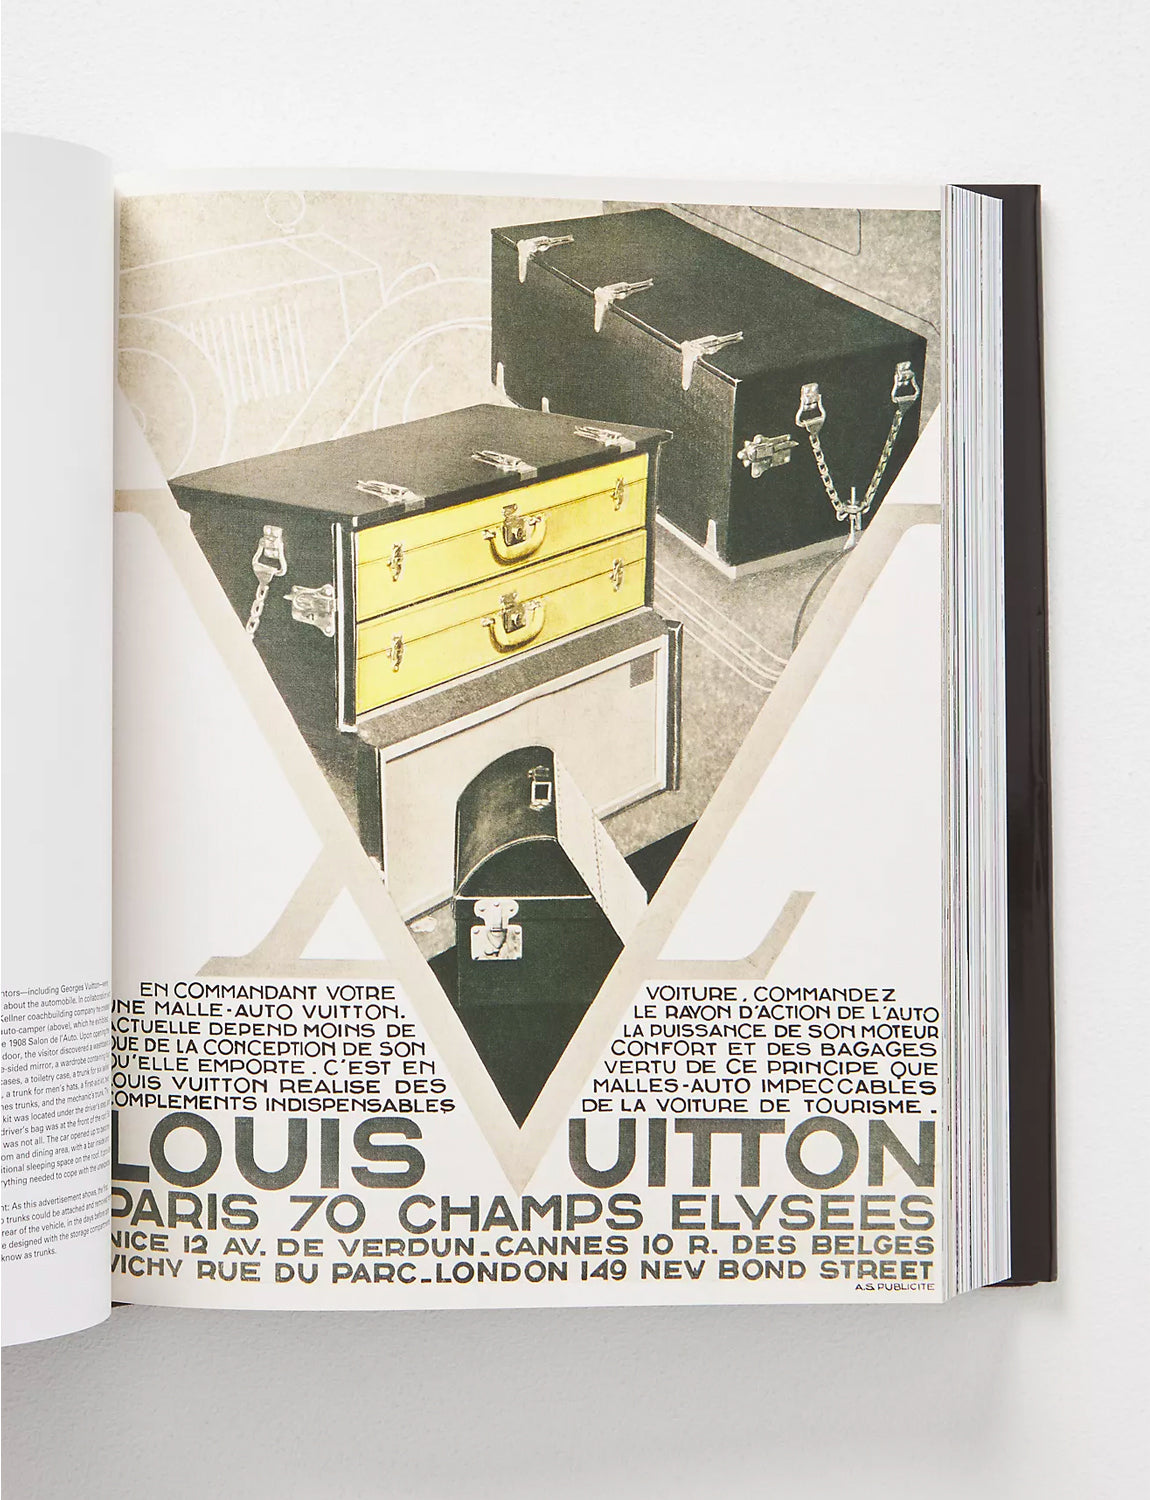 Louis Vuitton's Son Georges Vuitton